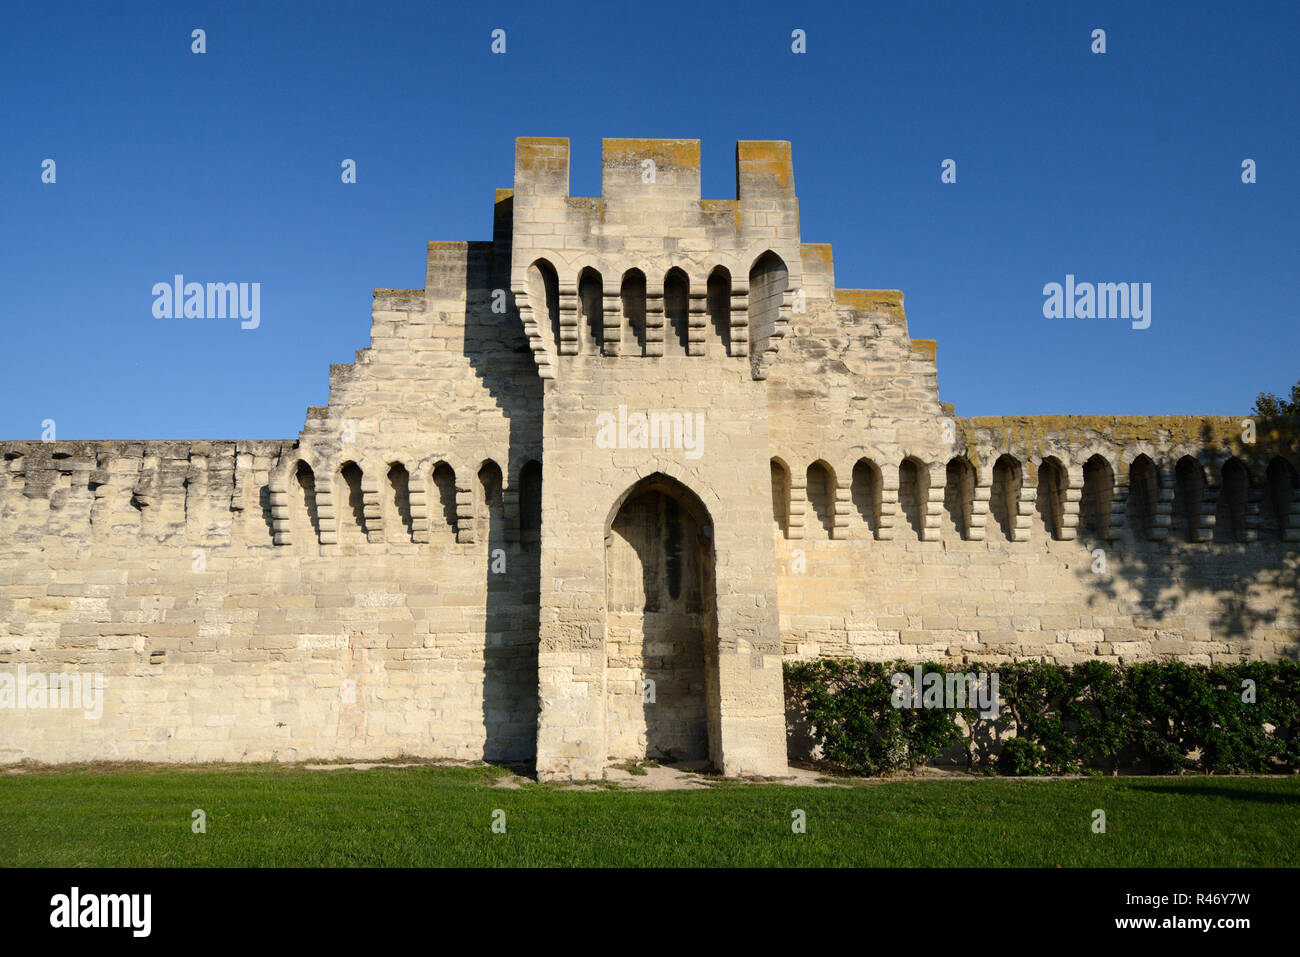 Murallas Medievales o las murallas de la ciudad, y la Torre de Piedra, almenada Avignon Provence Francia Foto de stock